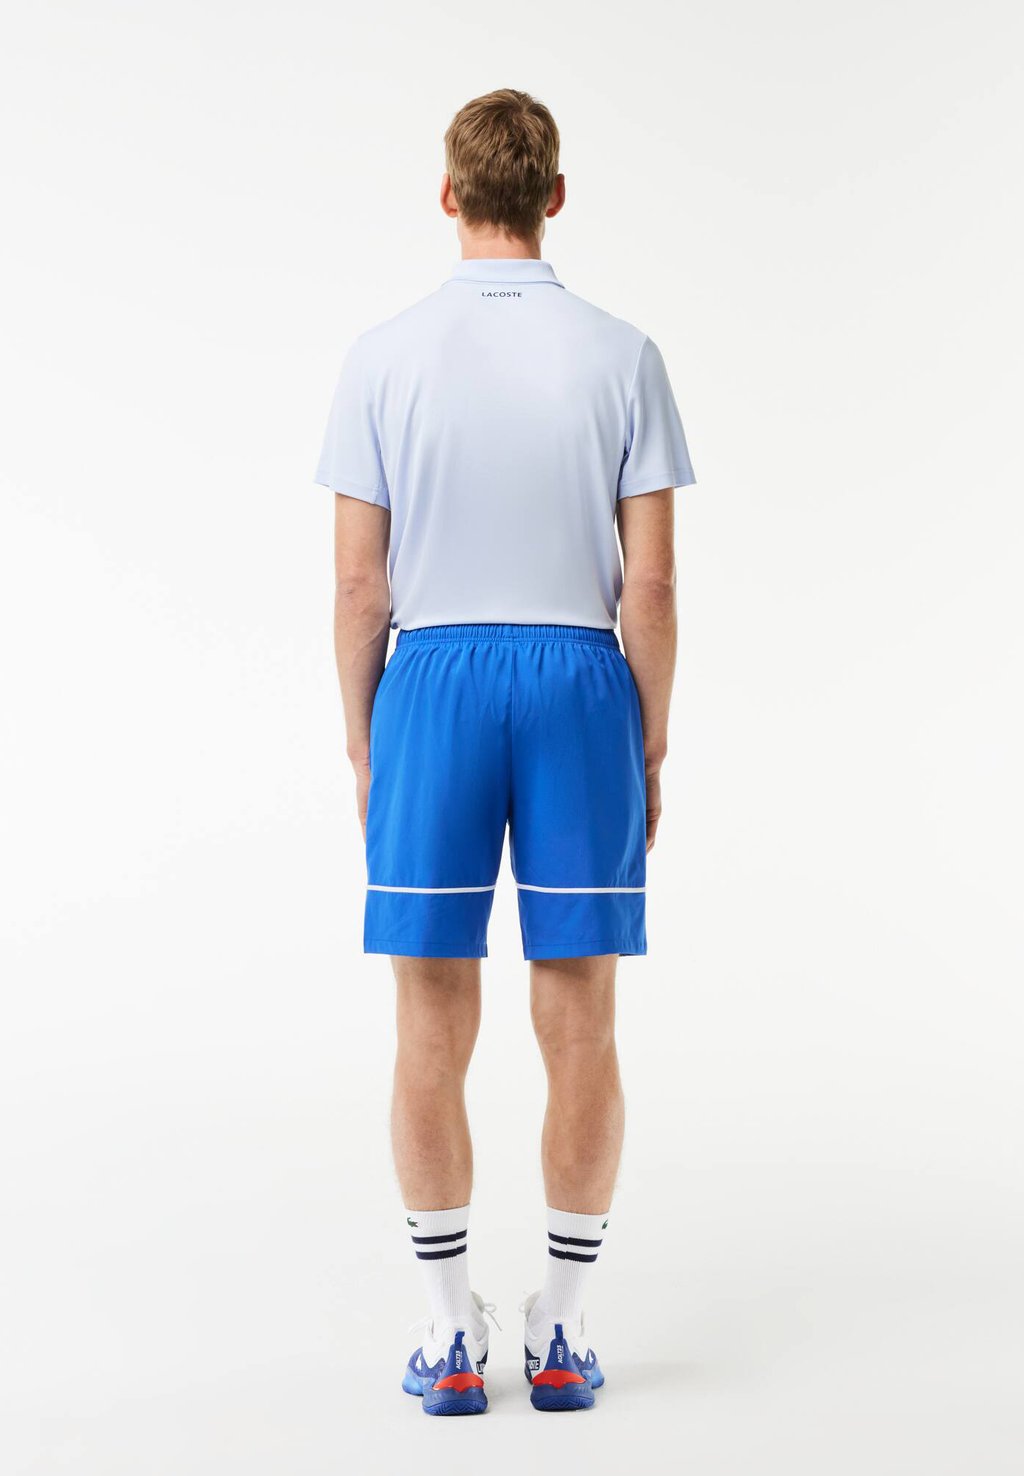 Спортивные шорты SHORTS TENNIS PLAYERS Lacoste Sport, цвет ladigue шорты lacoste sport lined tennis shorts цвет navy blue